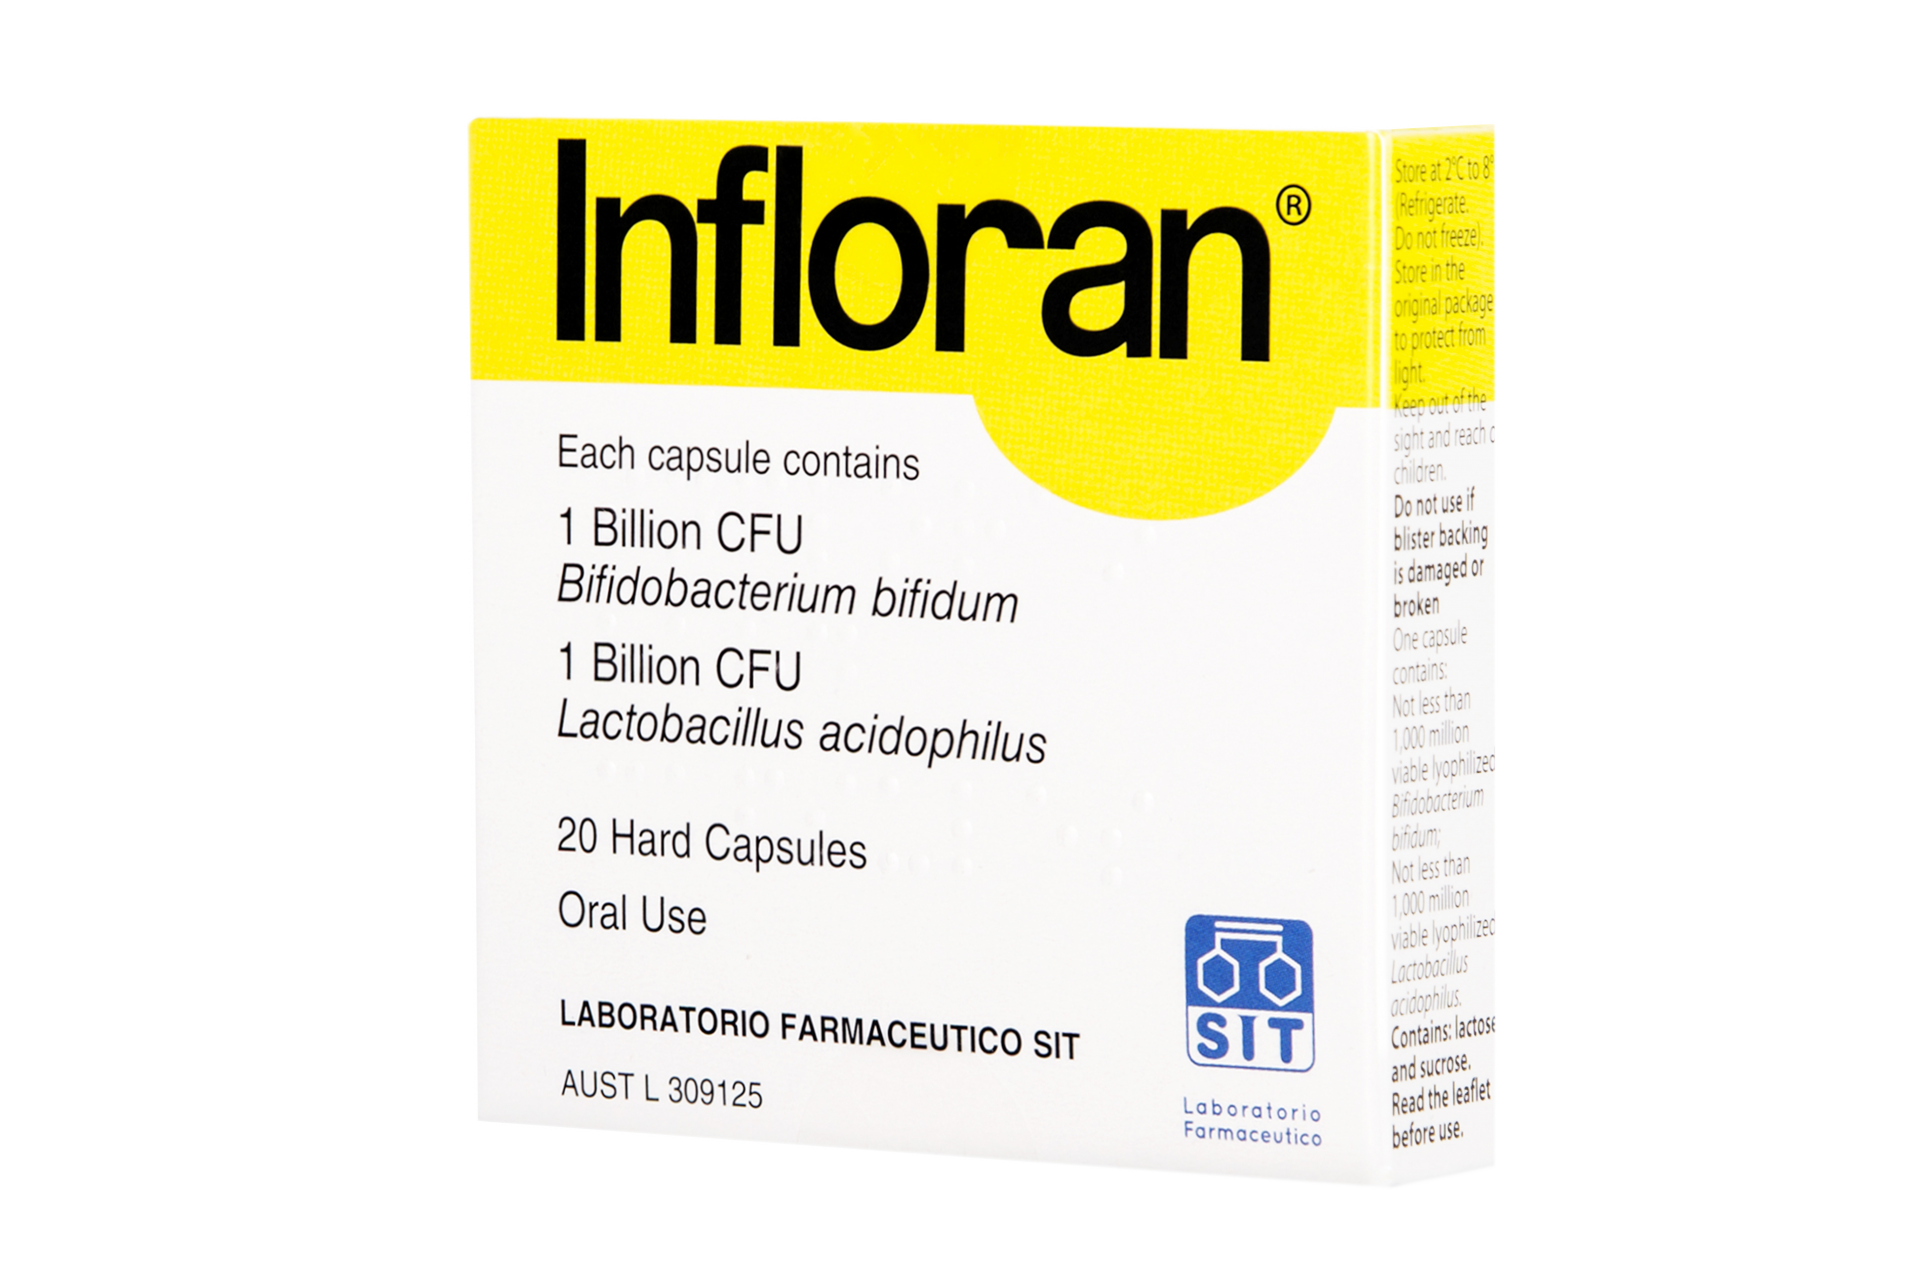 Infloran® Bifidobacterium bifidum and Lactobacillus acidophilus